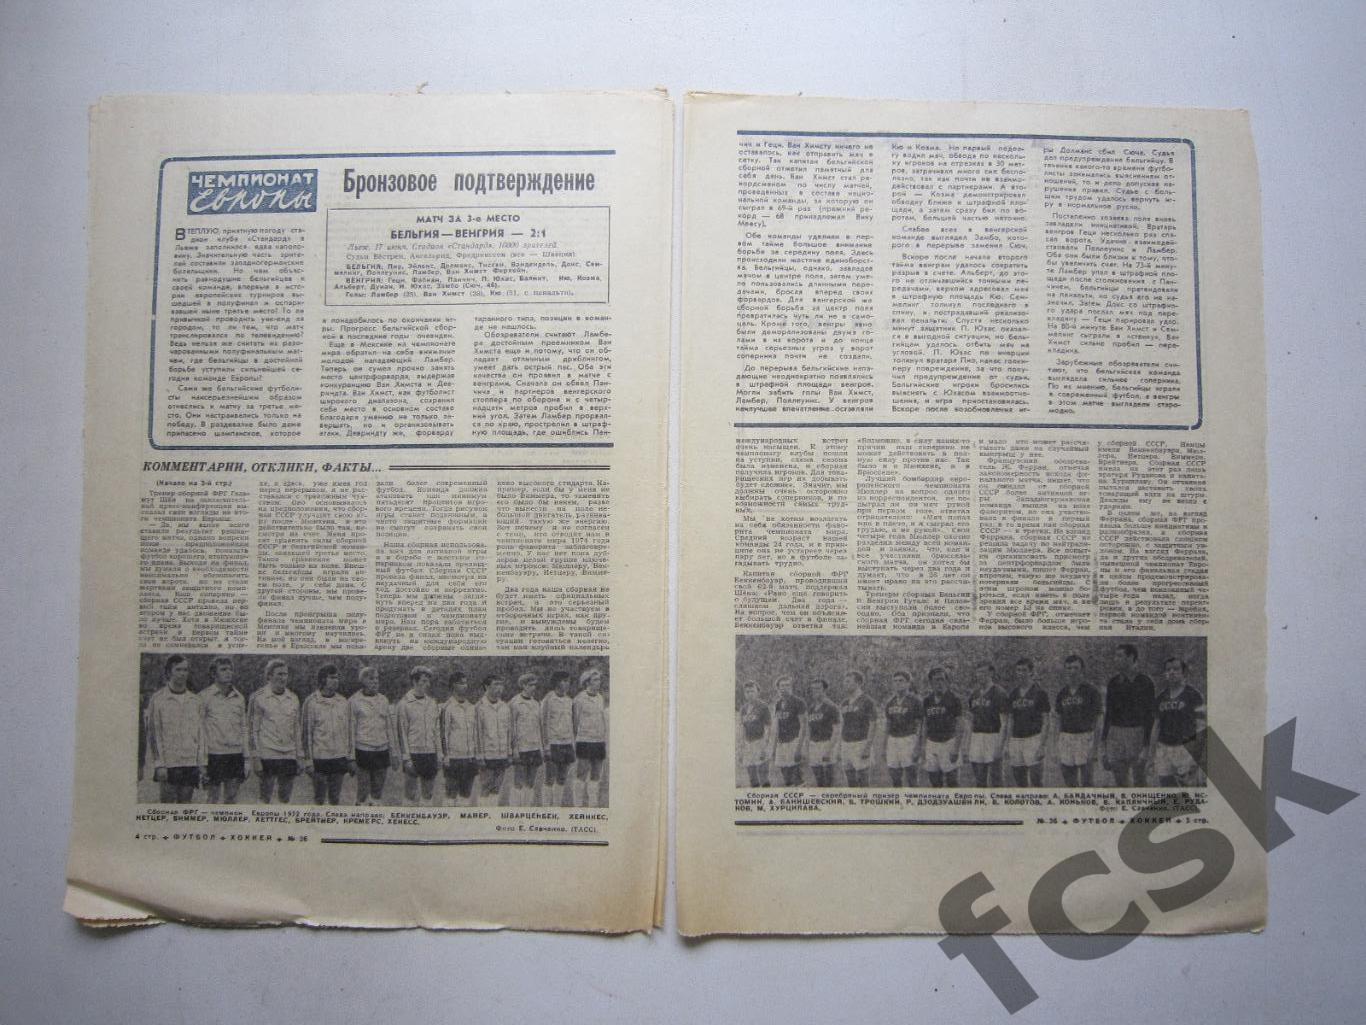 Футбол Чемпионат Европы 1972 СССР - ФРГ Бельгия - Венгрия (АВ-1) 1